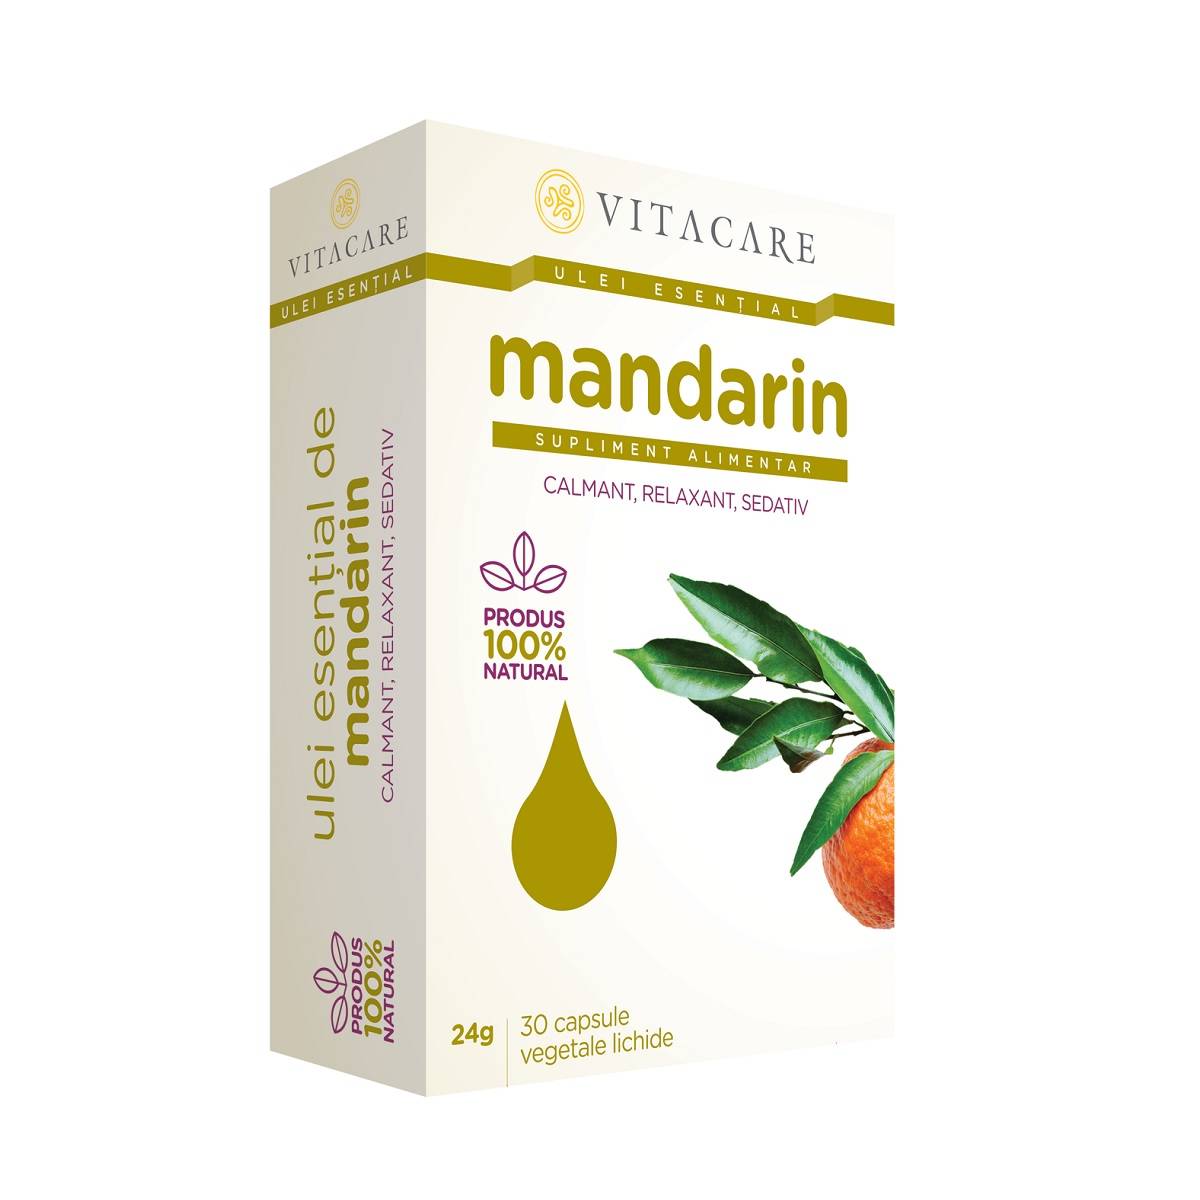 Vita Care Ulei esential de mandarin, 30cps - vitacare